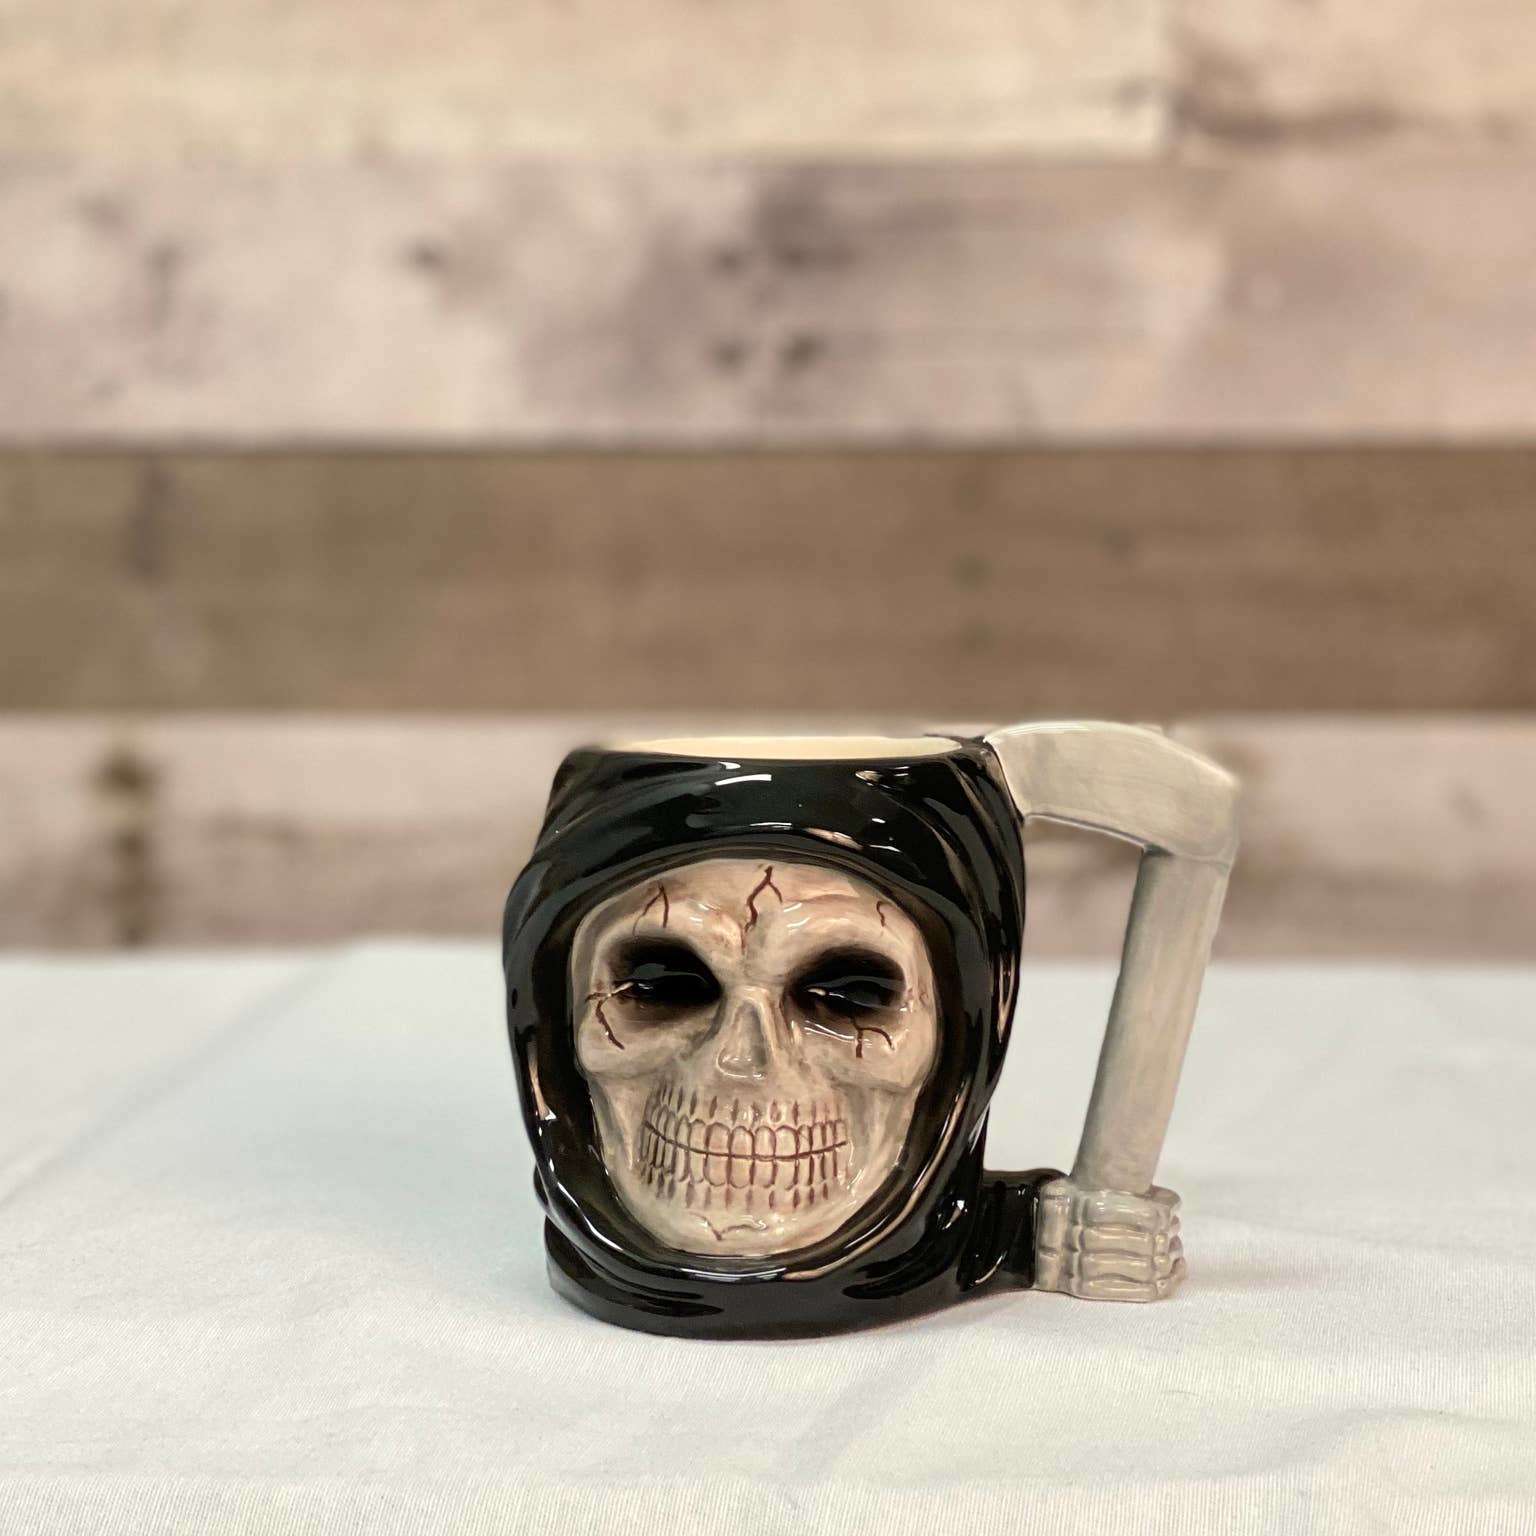 Grim Reaper Mug